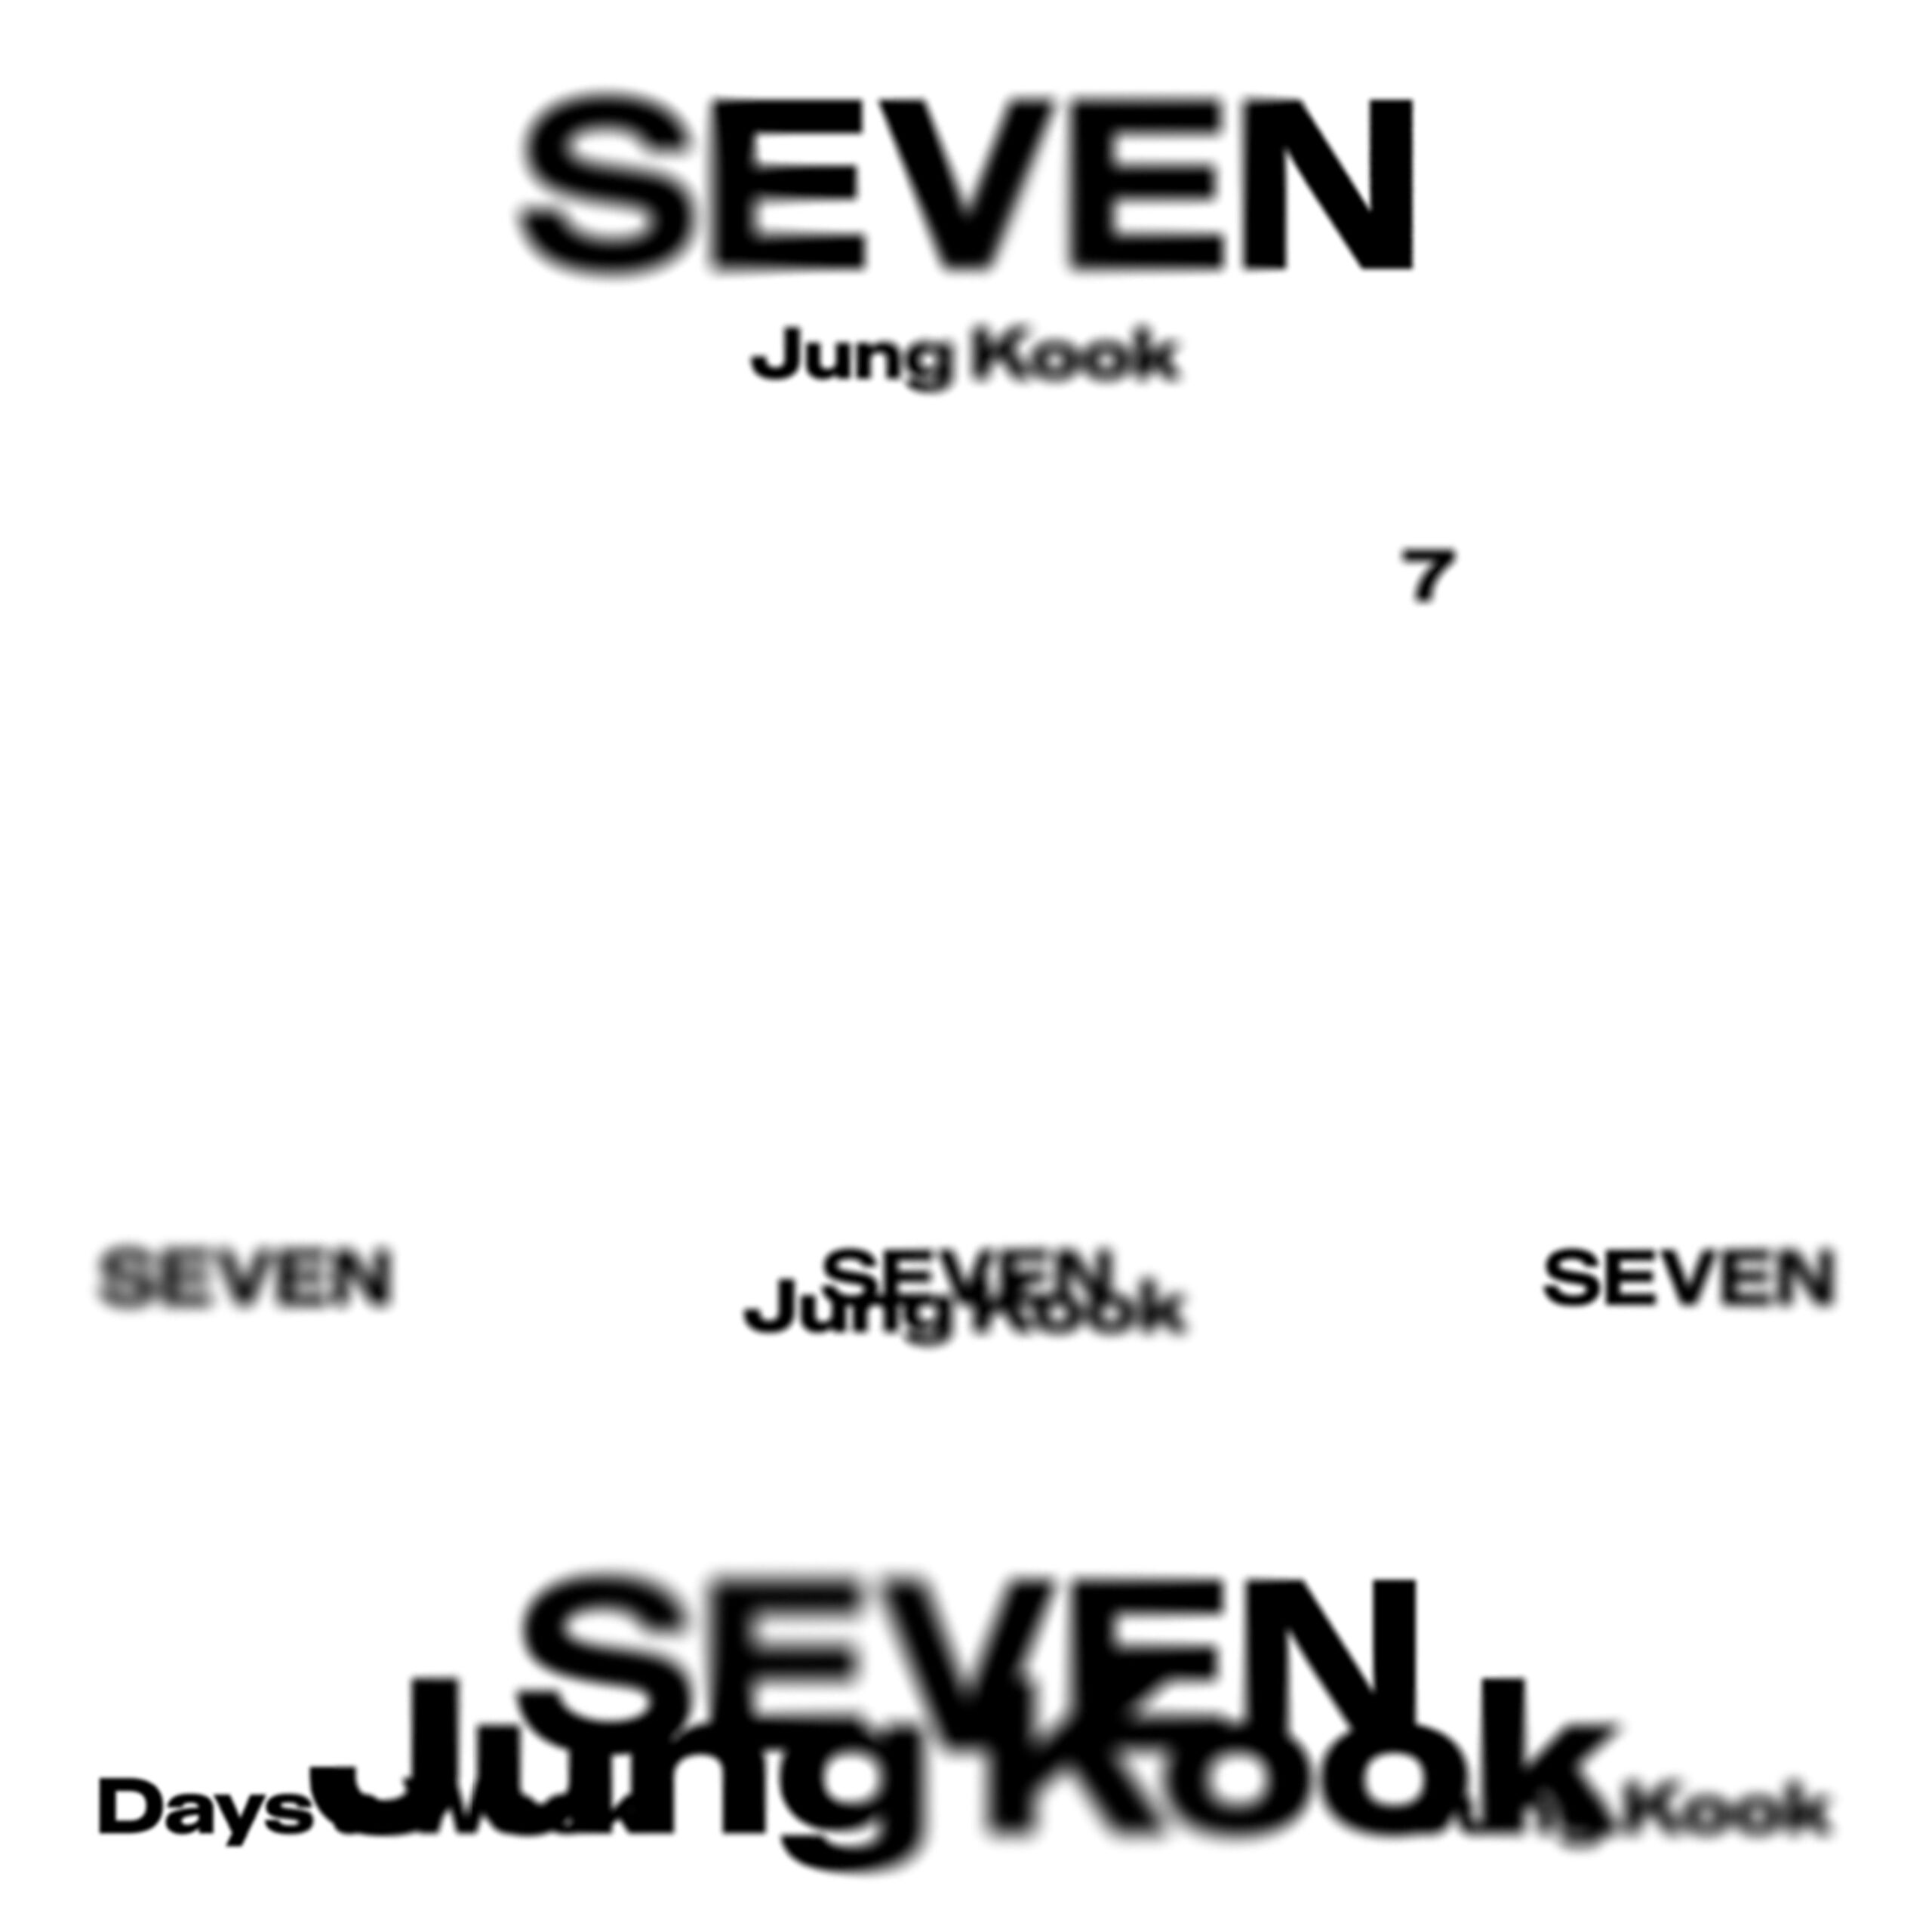 Jung Kook Solo Digital Single “Seven” Release - 300623